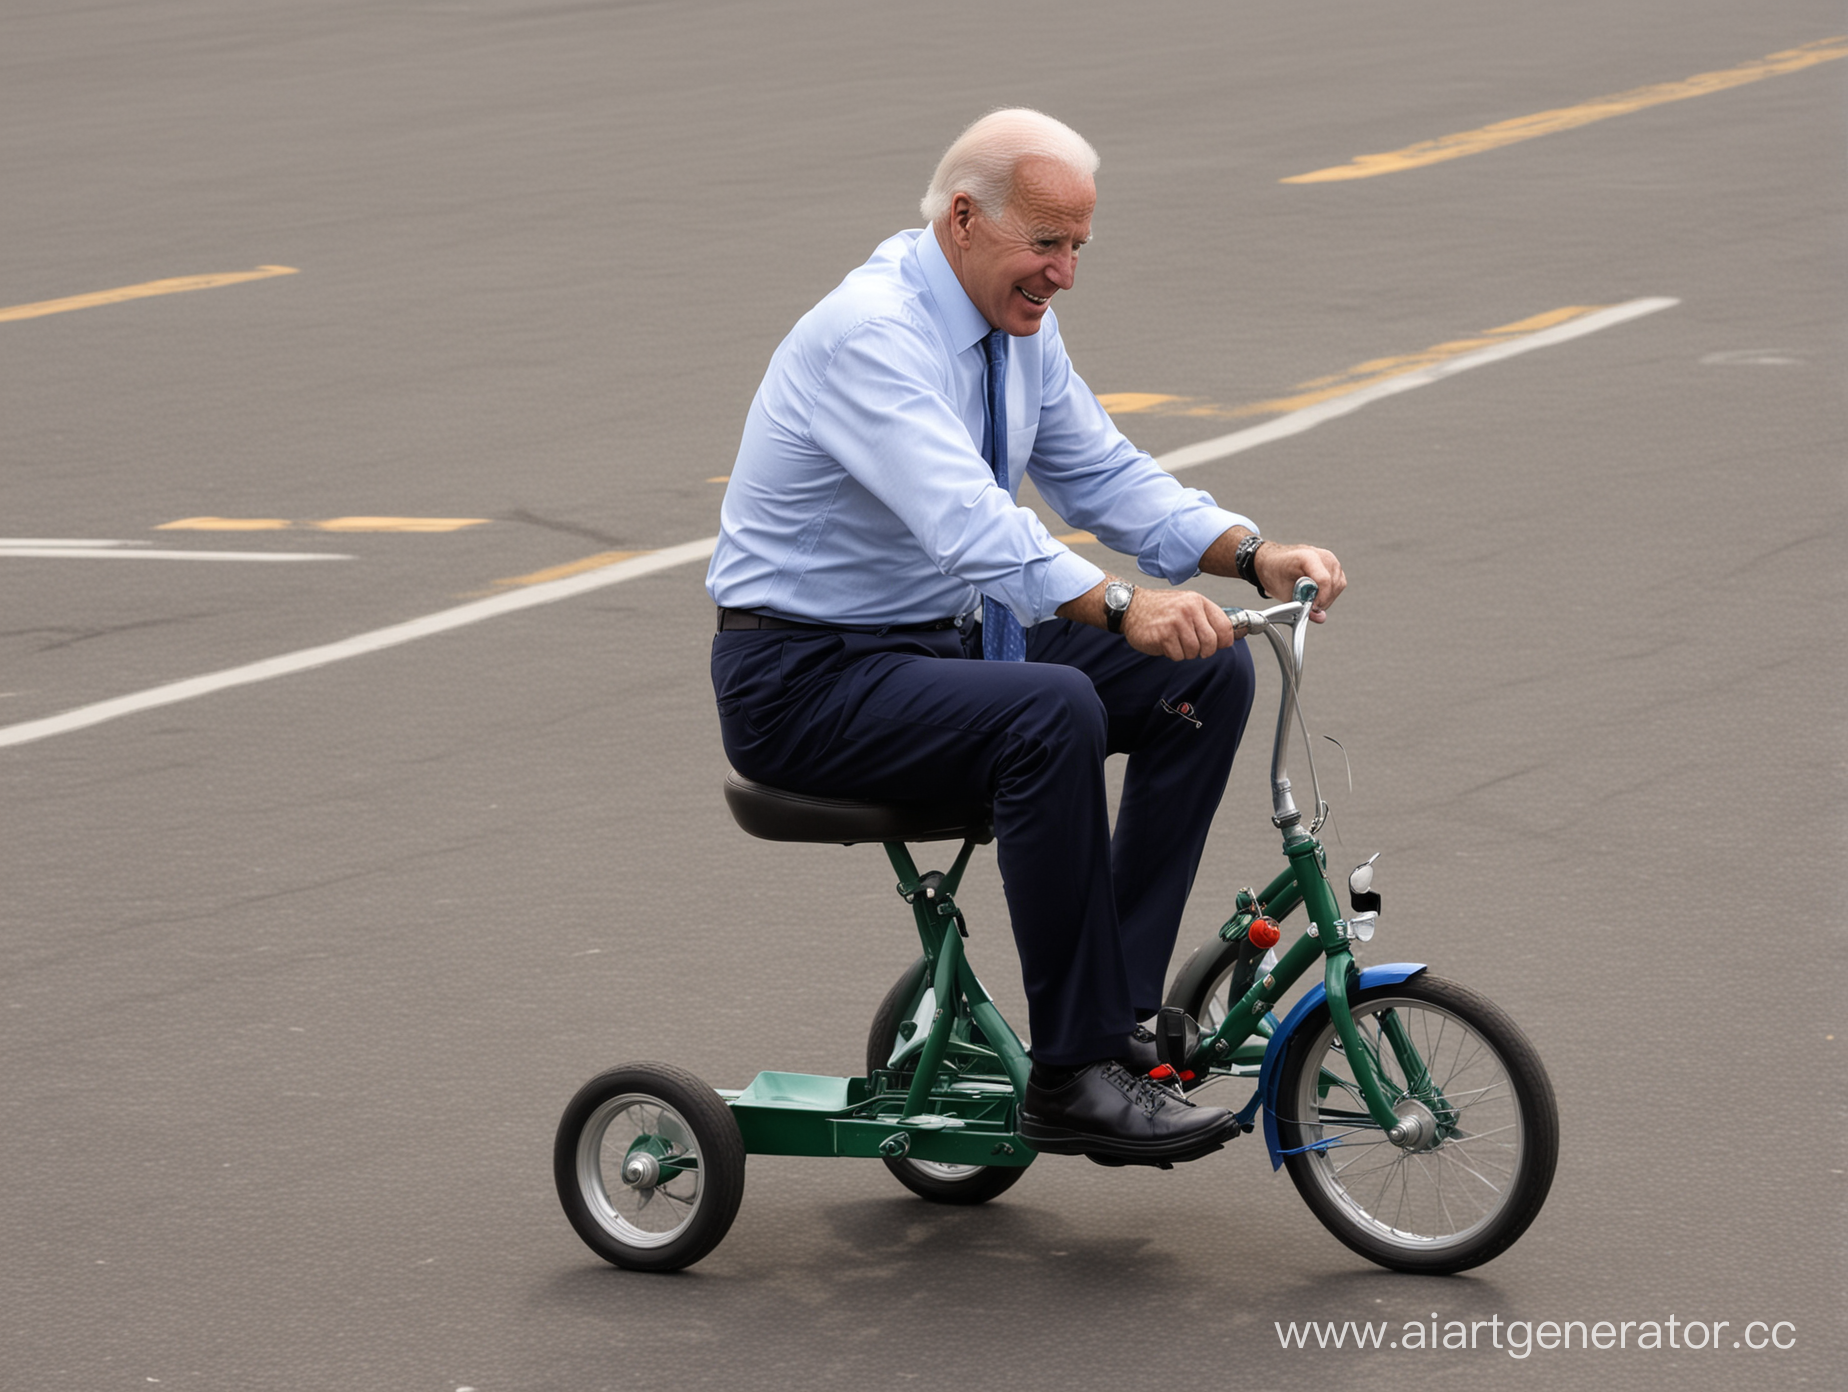 Джо Байден едет на маленьком трехколесном велосипеде,4k